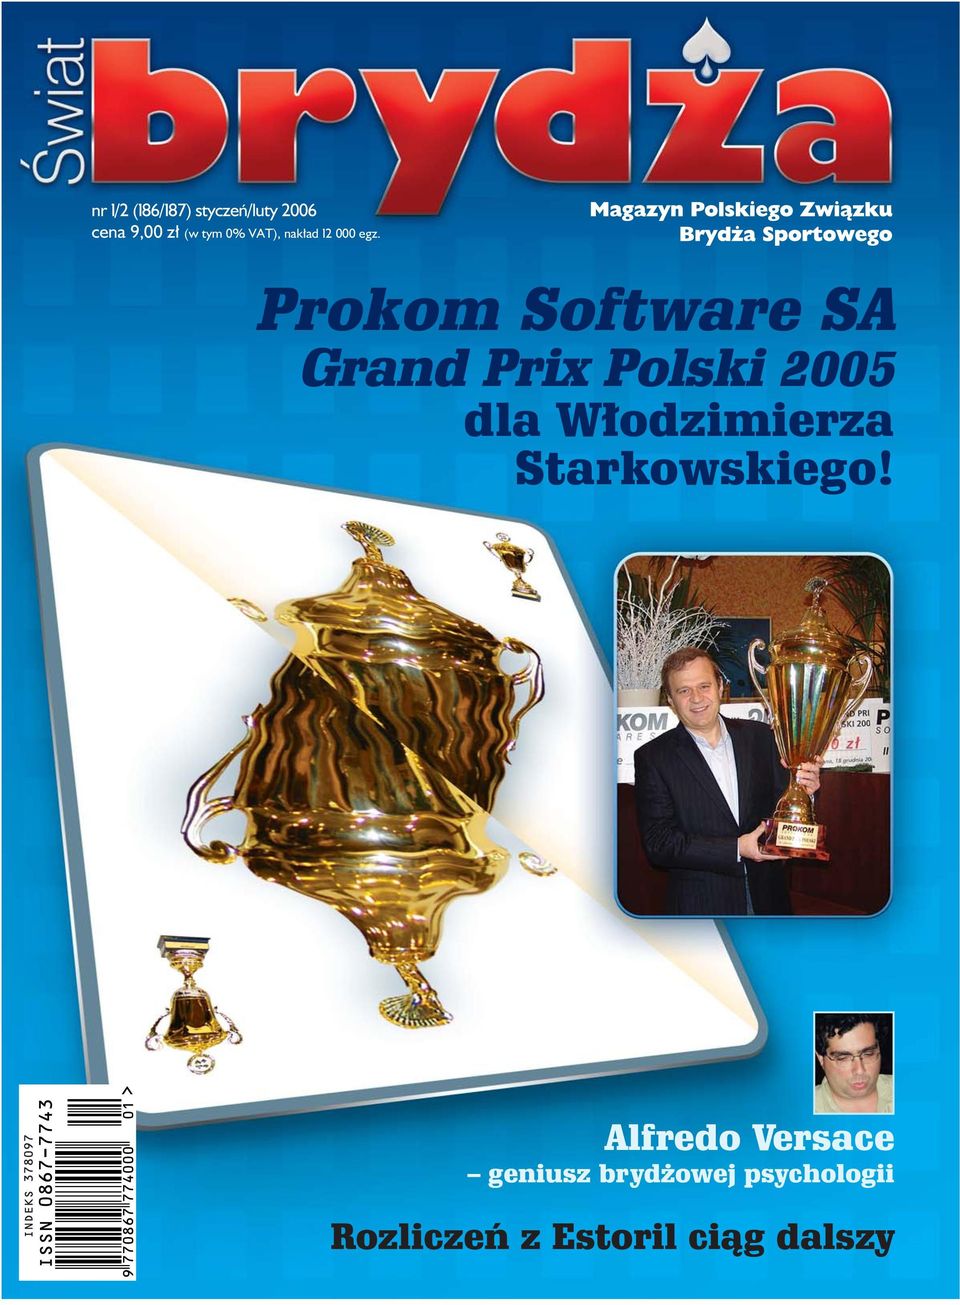 Prokom Software SA Grand Prix Polski 2005 dla W odzimierza